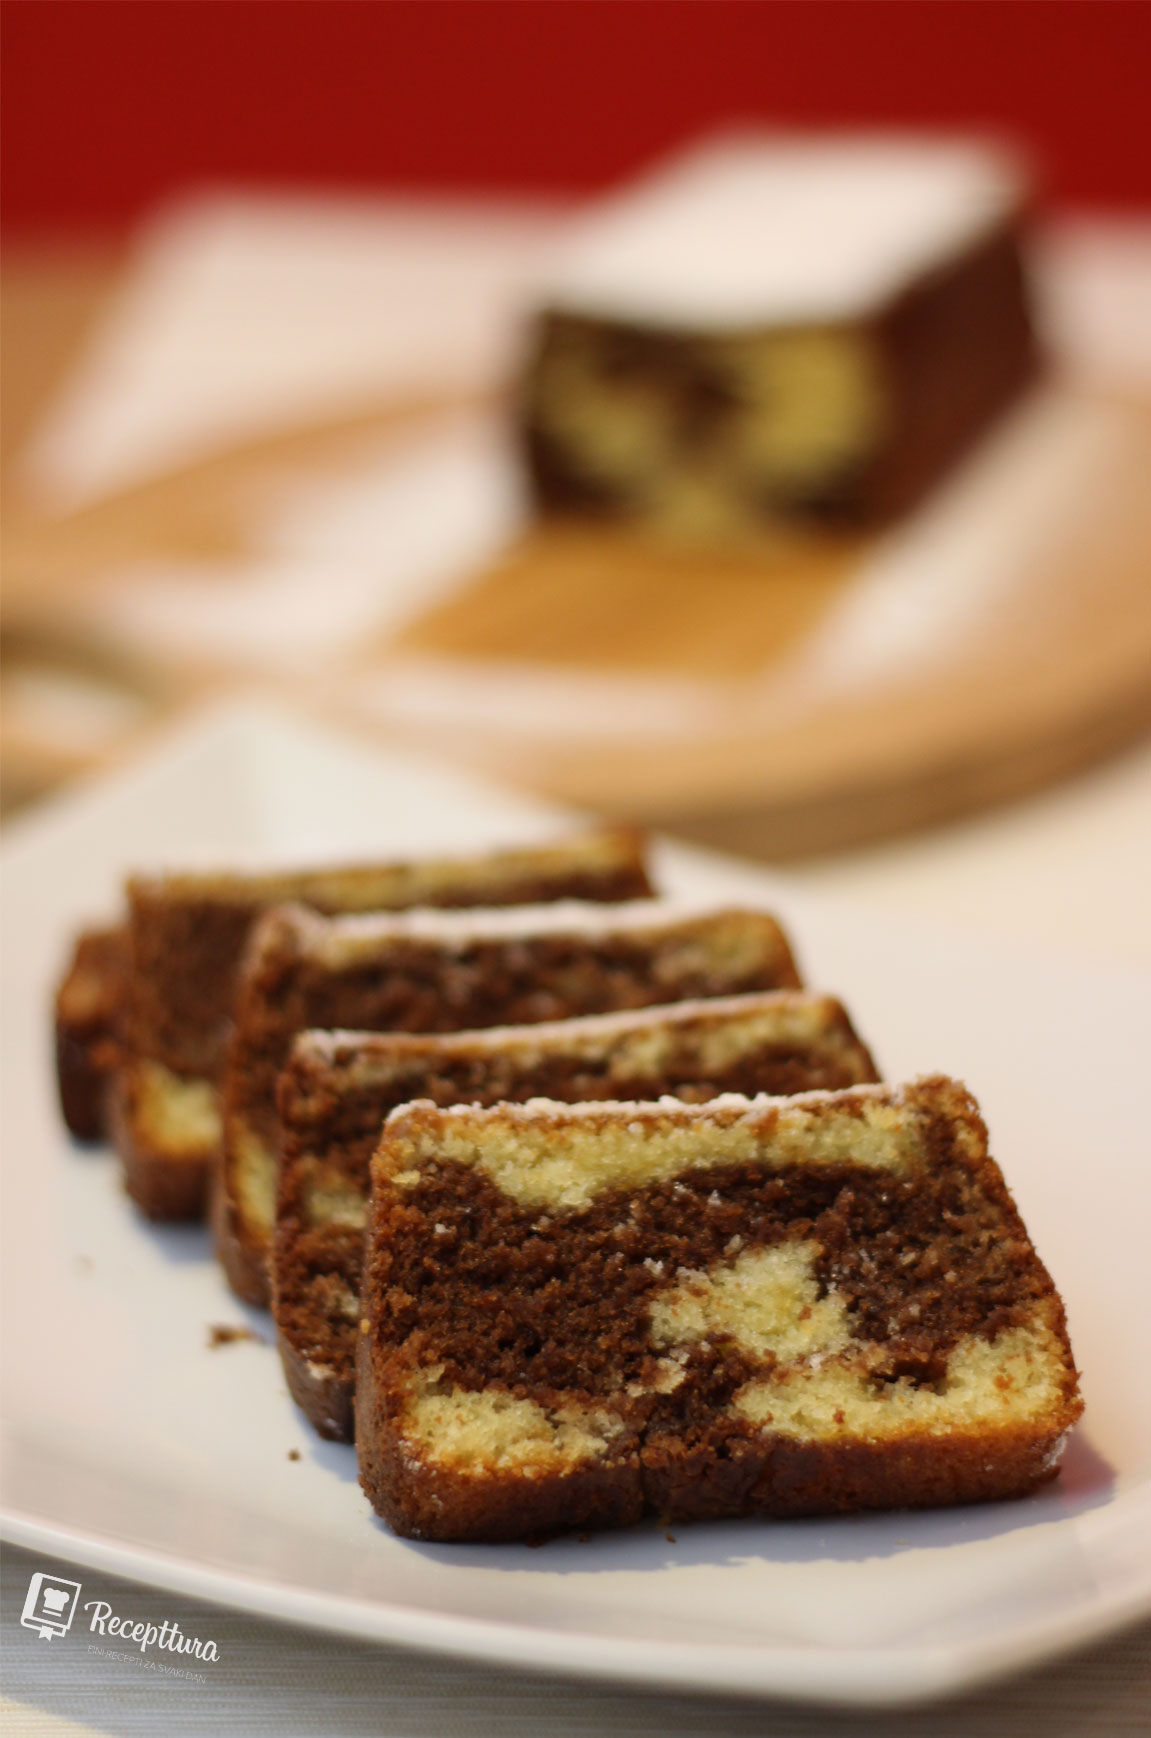 Mramorni kolač jedan je od najpoznatijih lijevanih kolača.